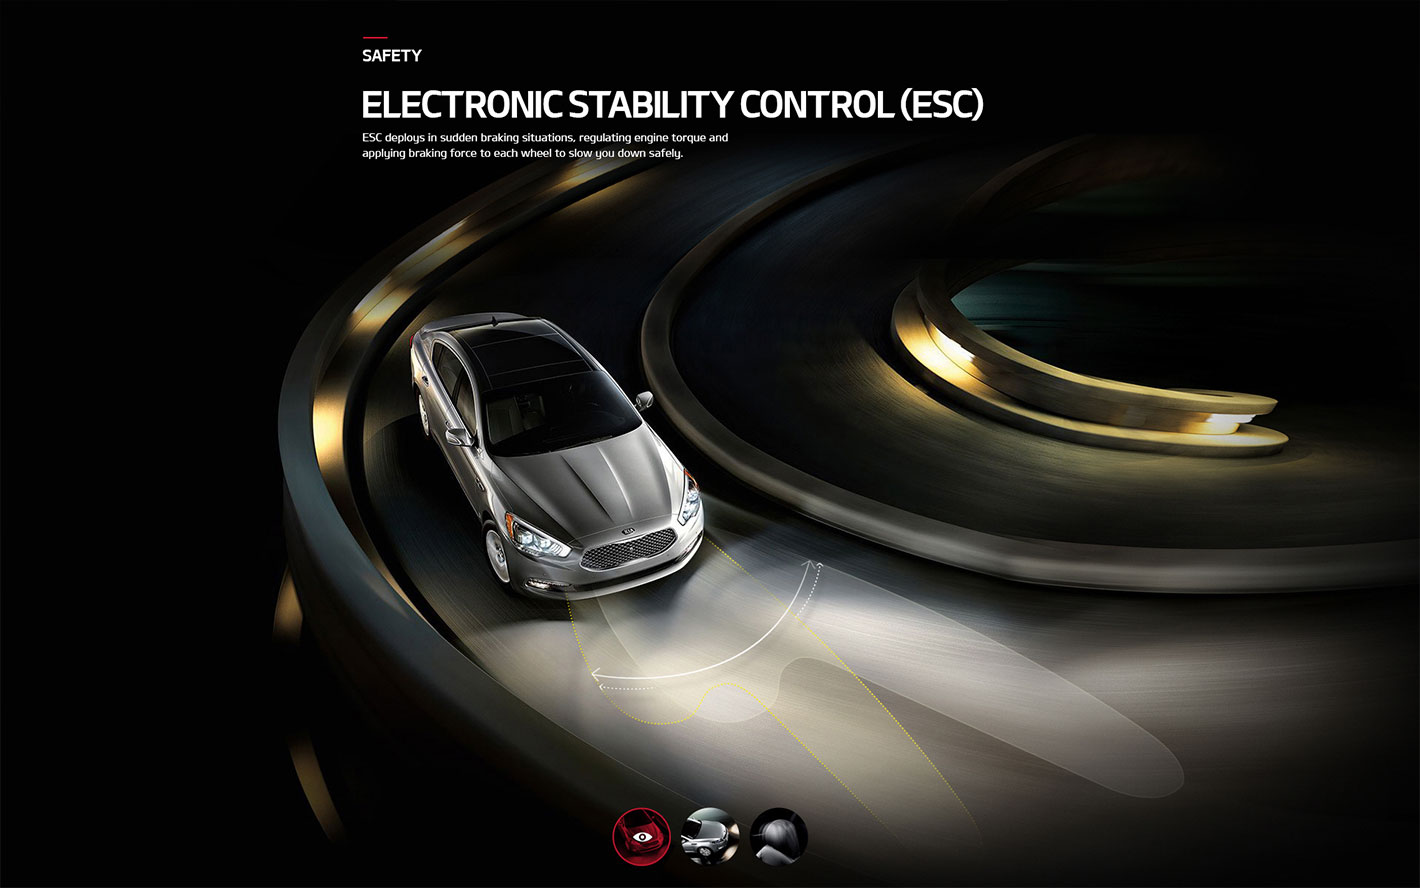 Electronic Stability Control (ESC) Feature를 표현하는 디자인 시안